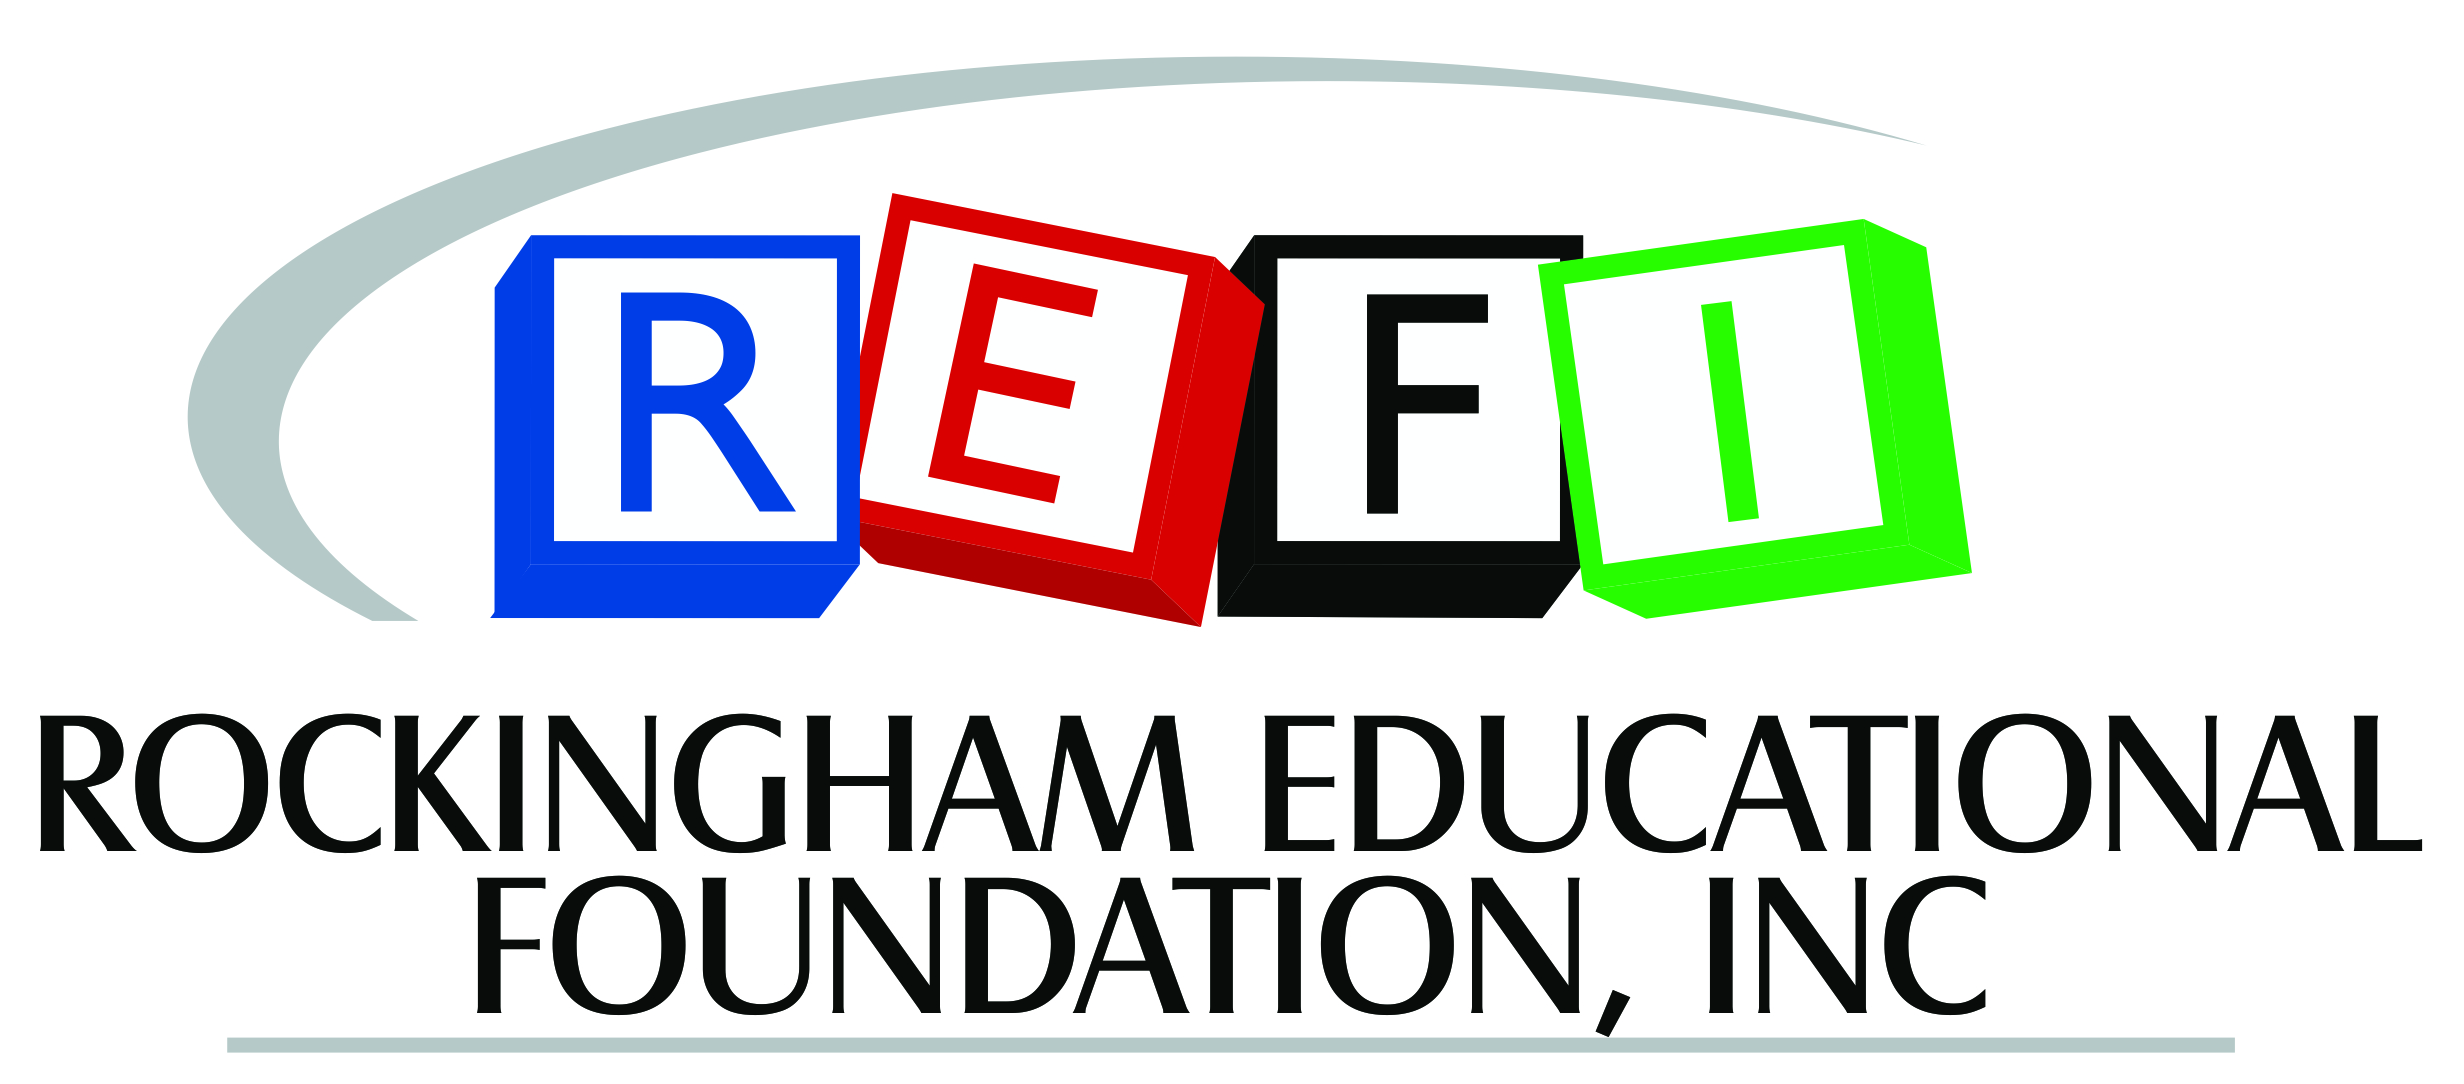 Rockingham Educational Foundation 